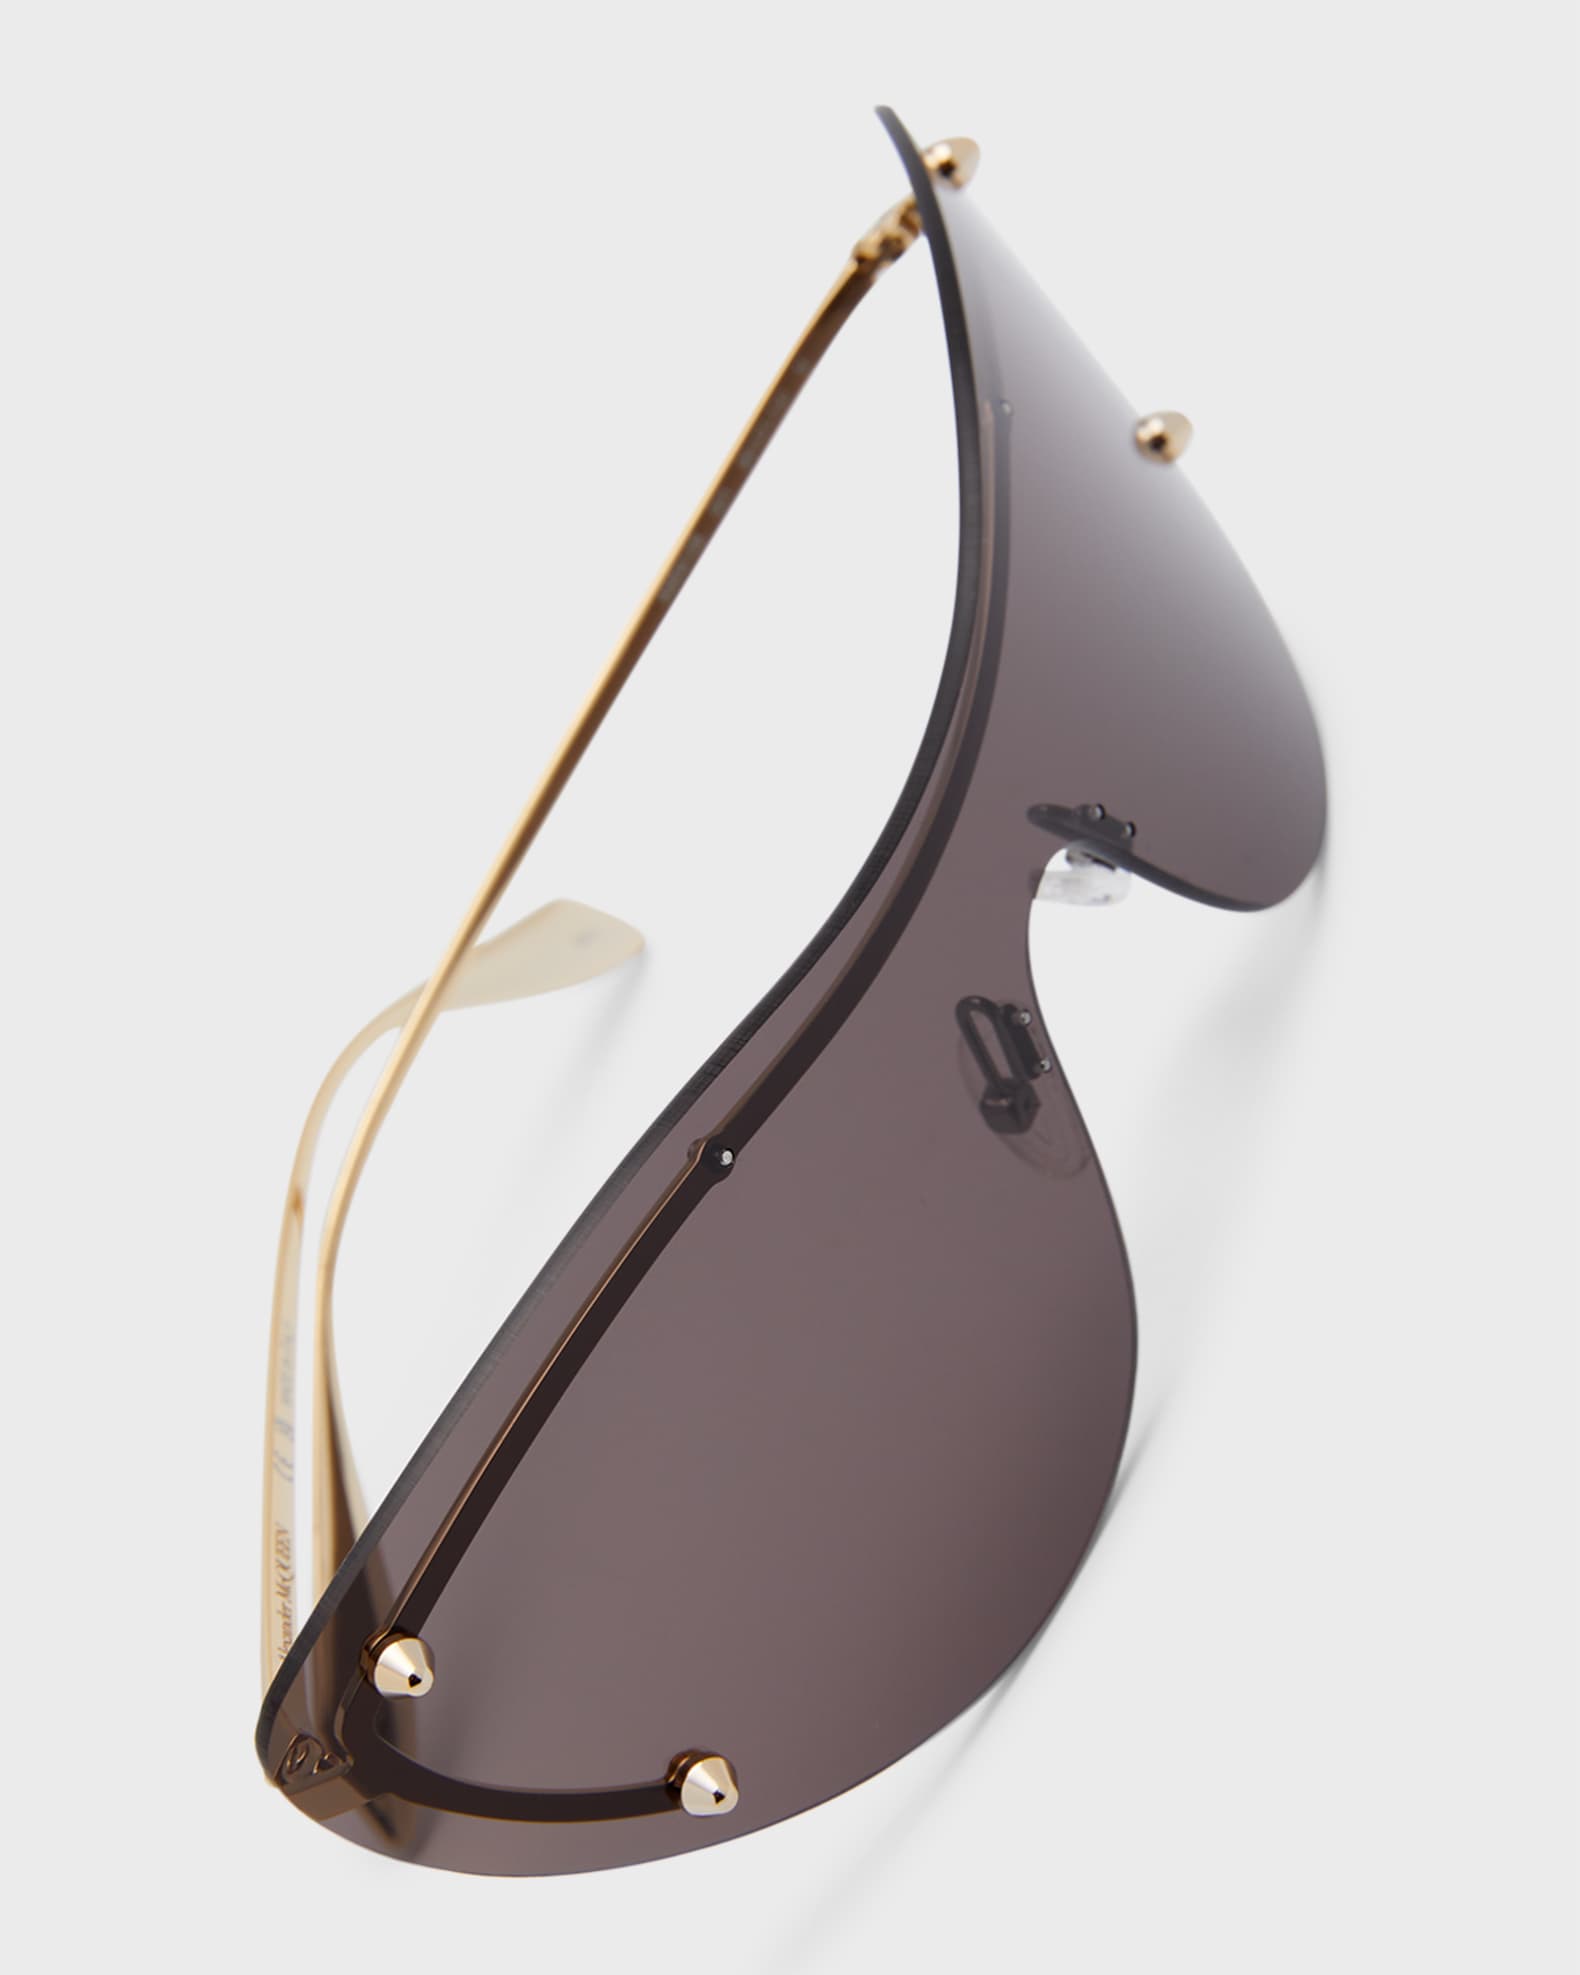 Vintage Oversized Visor Mask Sunglasses Women Men 2019 Windproof